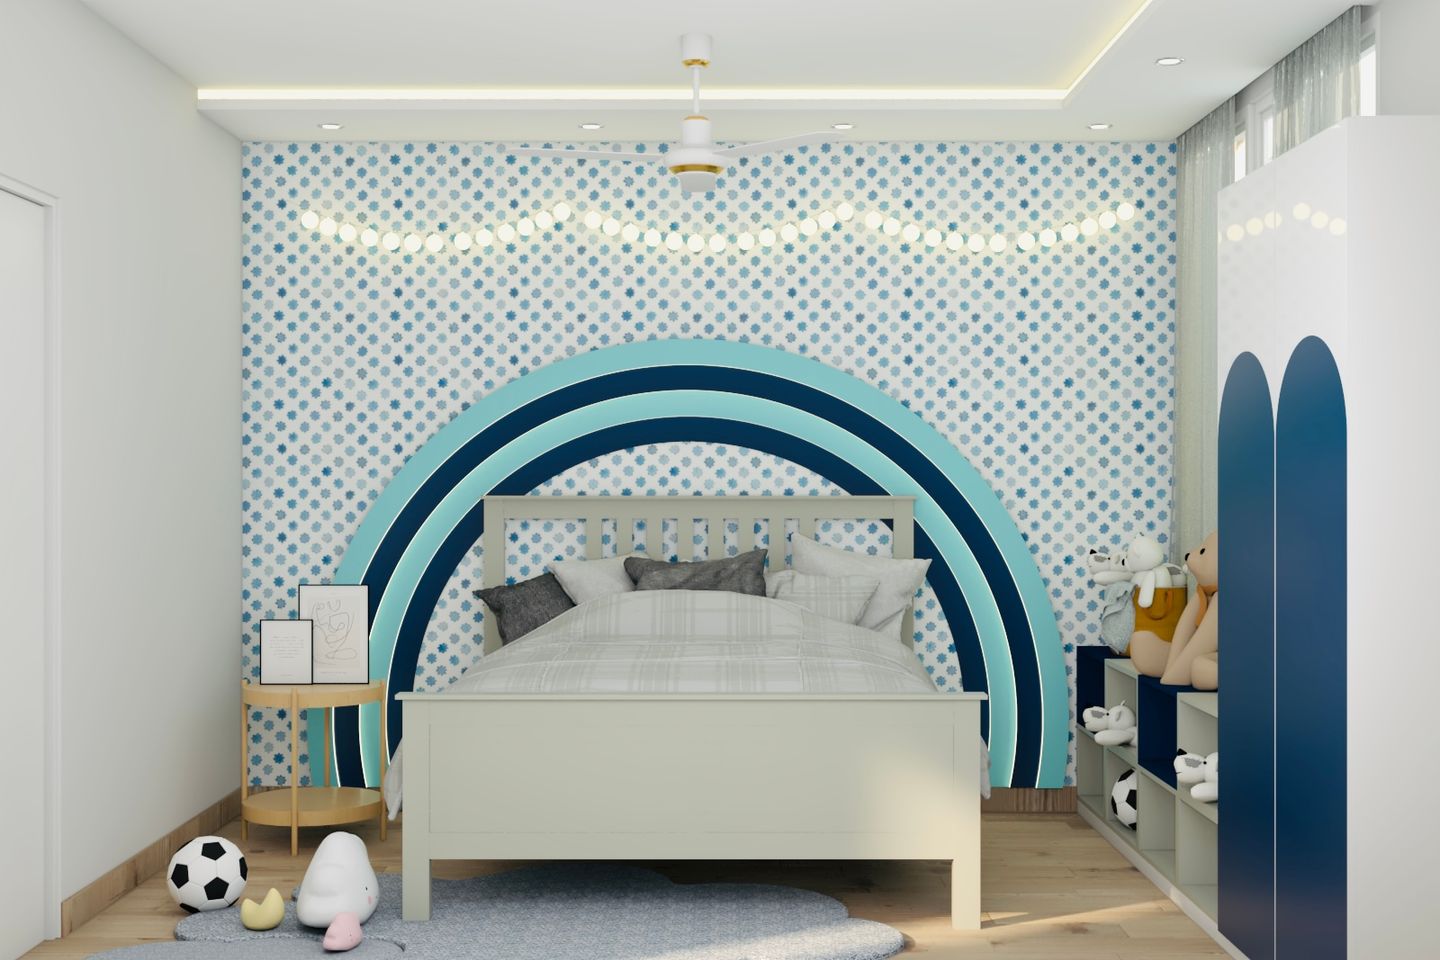 Rectangular White Ceiling Design For Kids' Rooms - Livspace